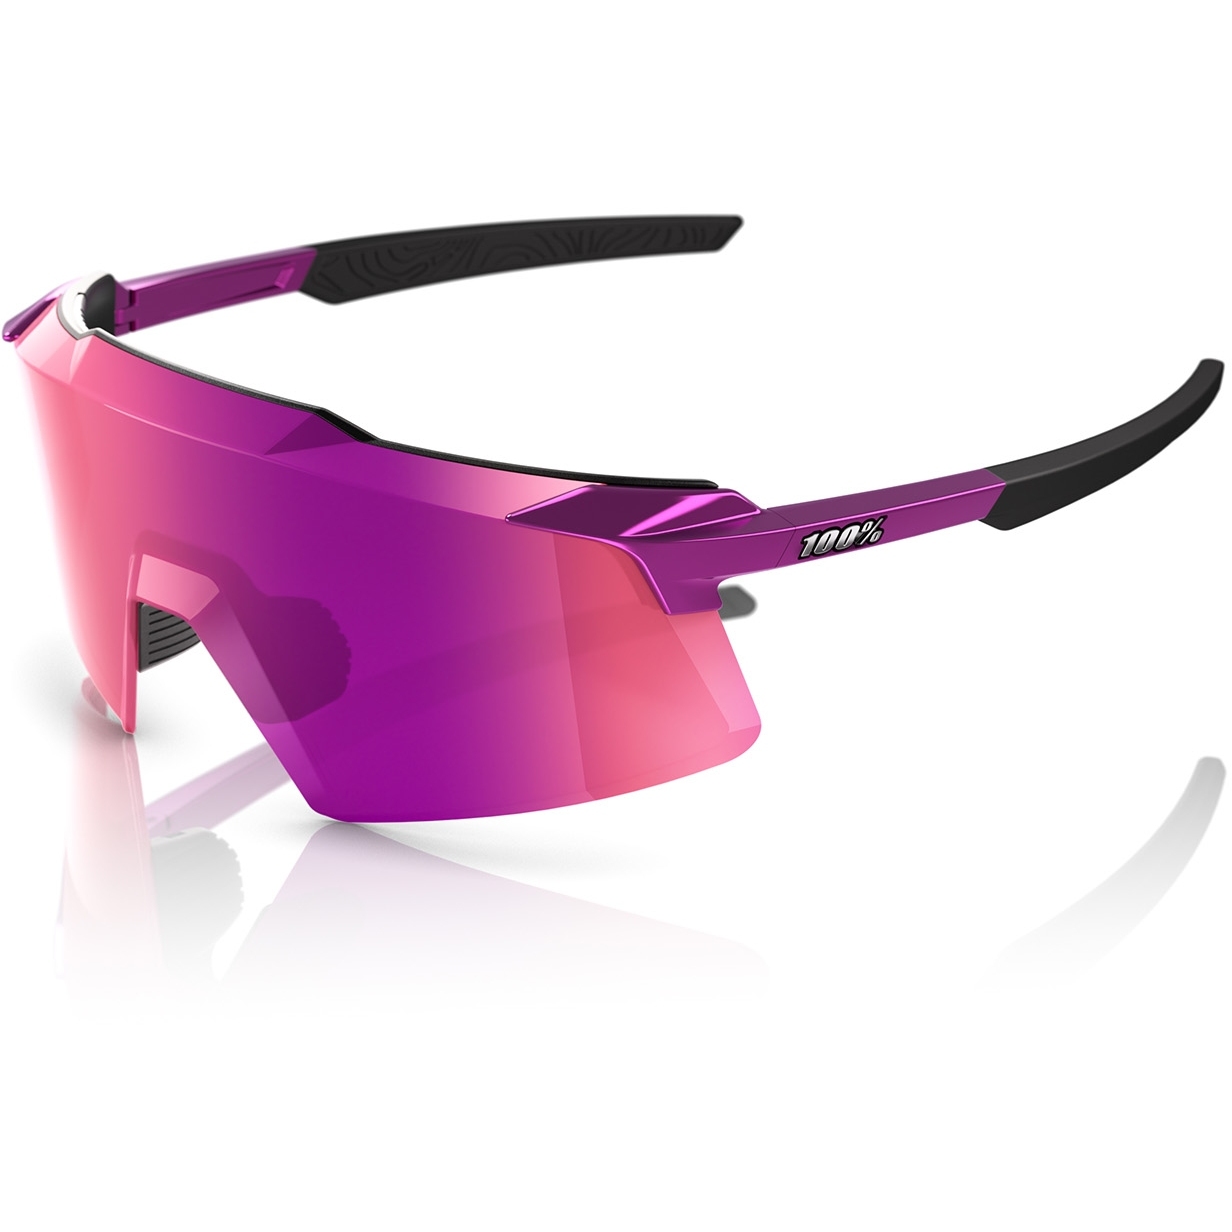 Produktbild von 100% Aerocraft Multilayer Mirror Brille - Gloss Purple Chrome / Purple